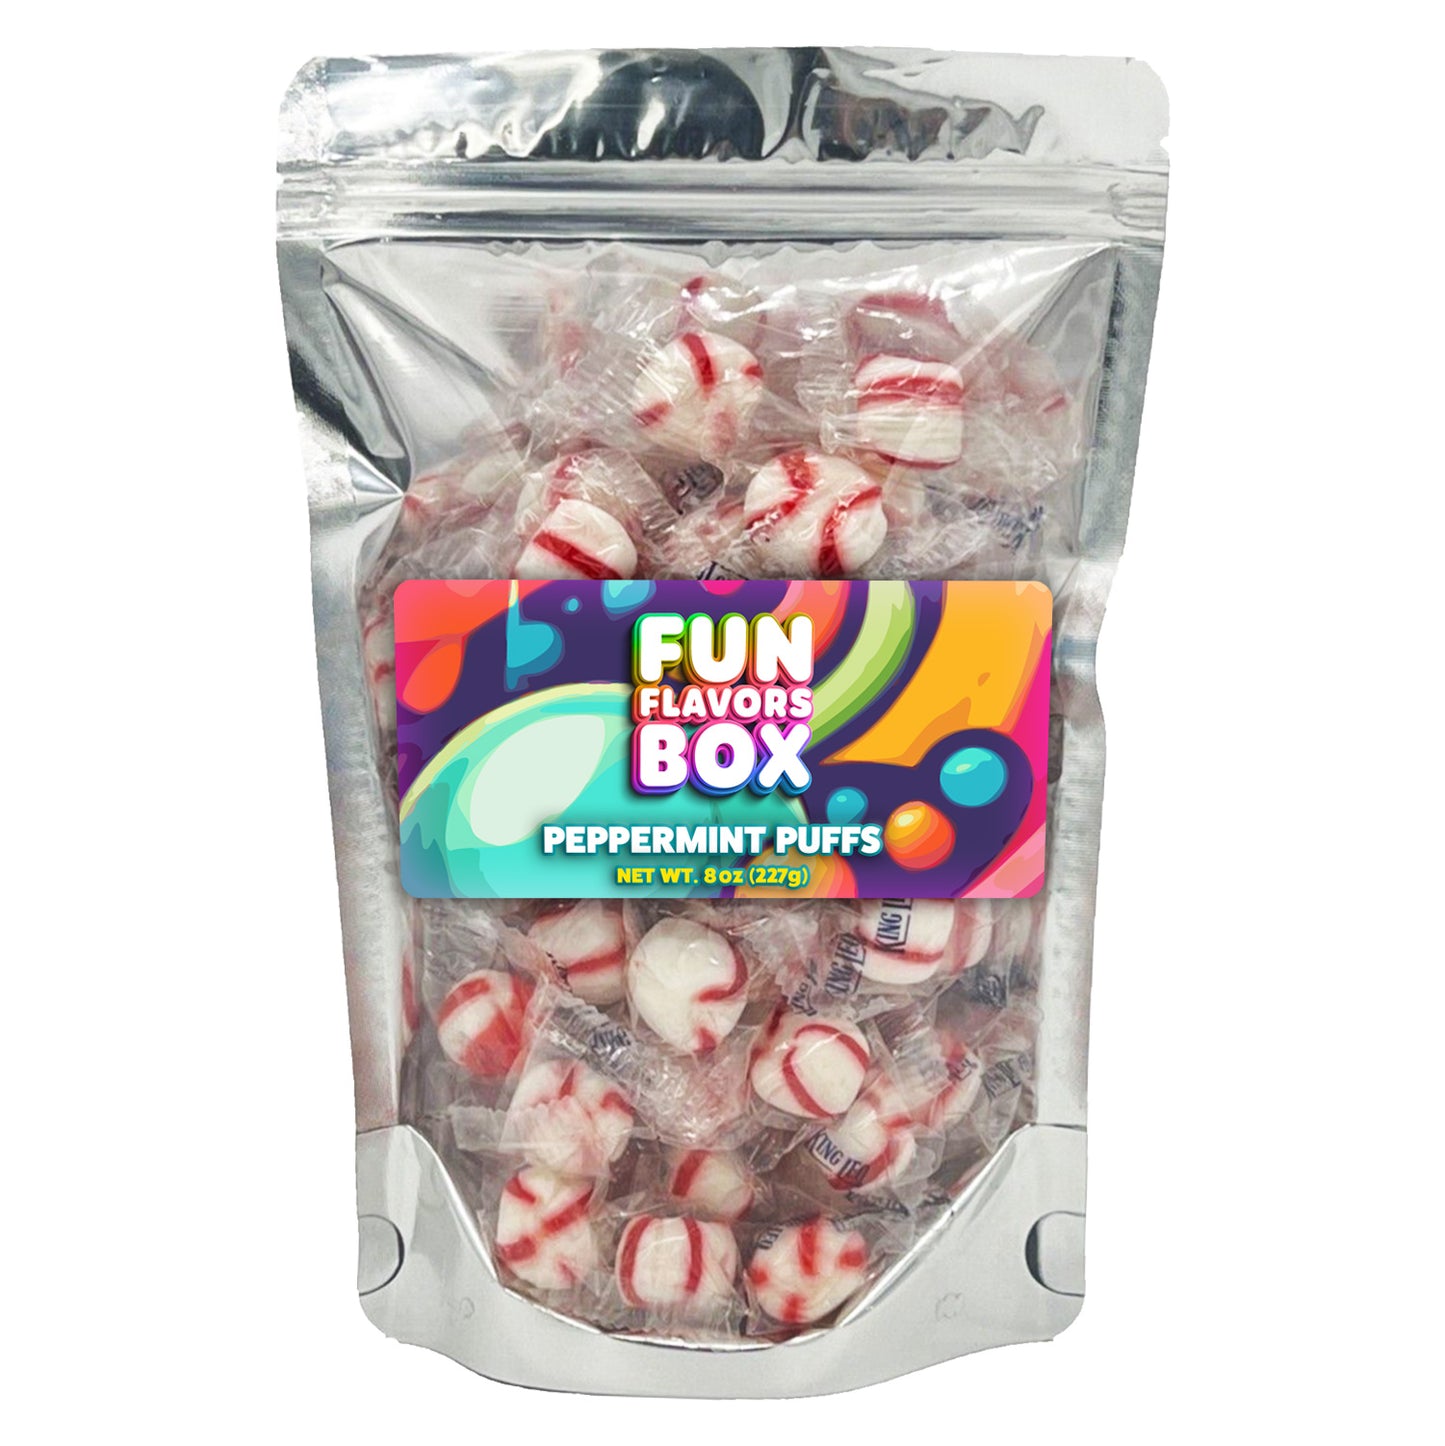 Soft Peppermint Puffs Candy, Gluten-Free, Kosher, Half Pound 8 oz